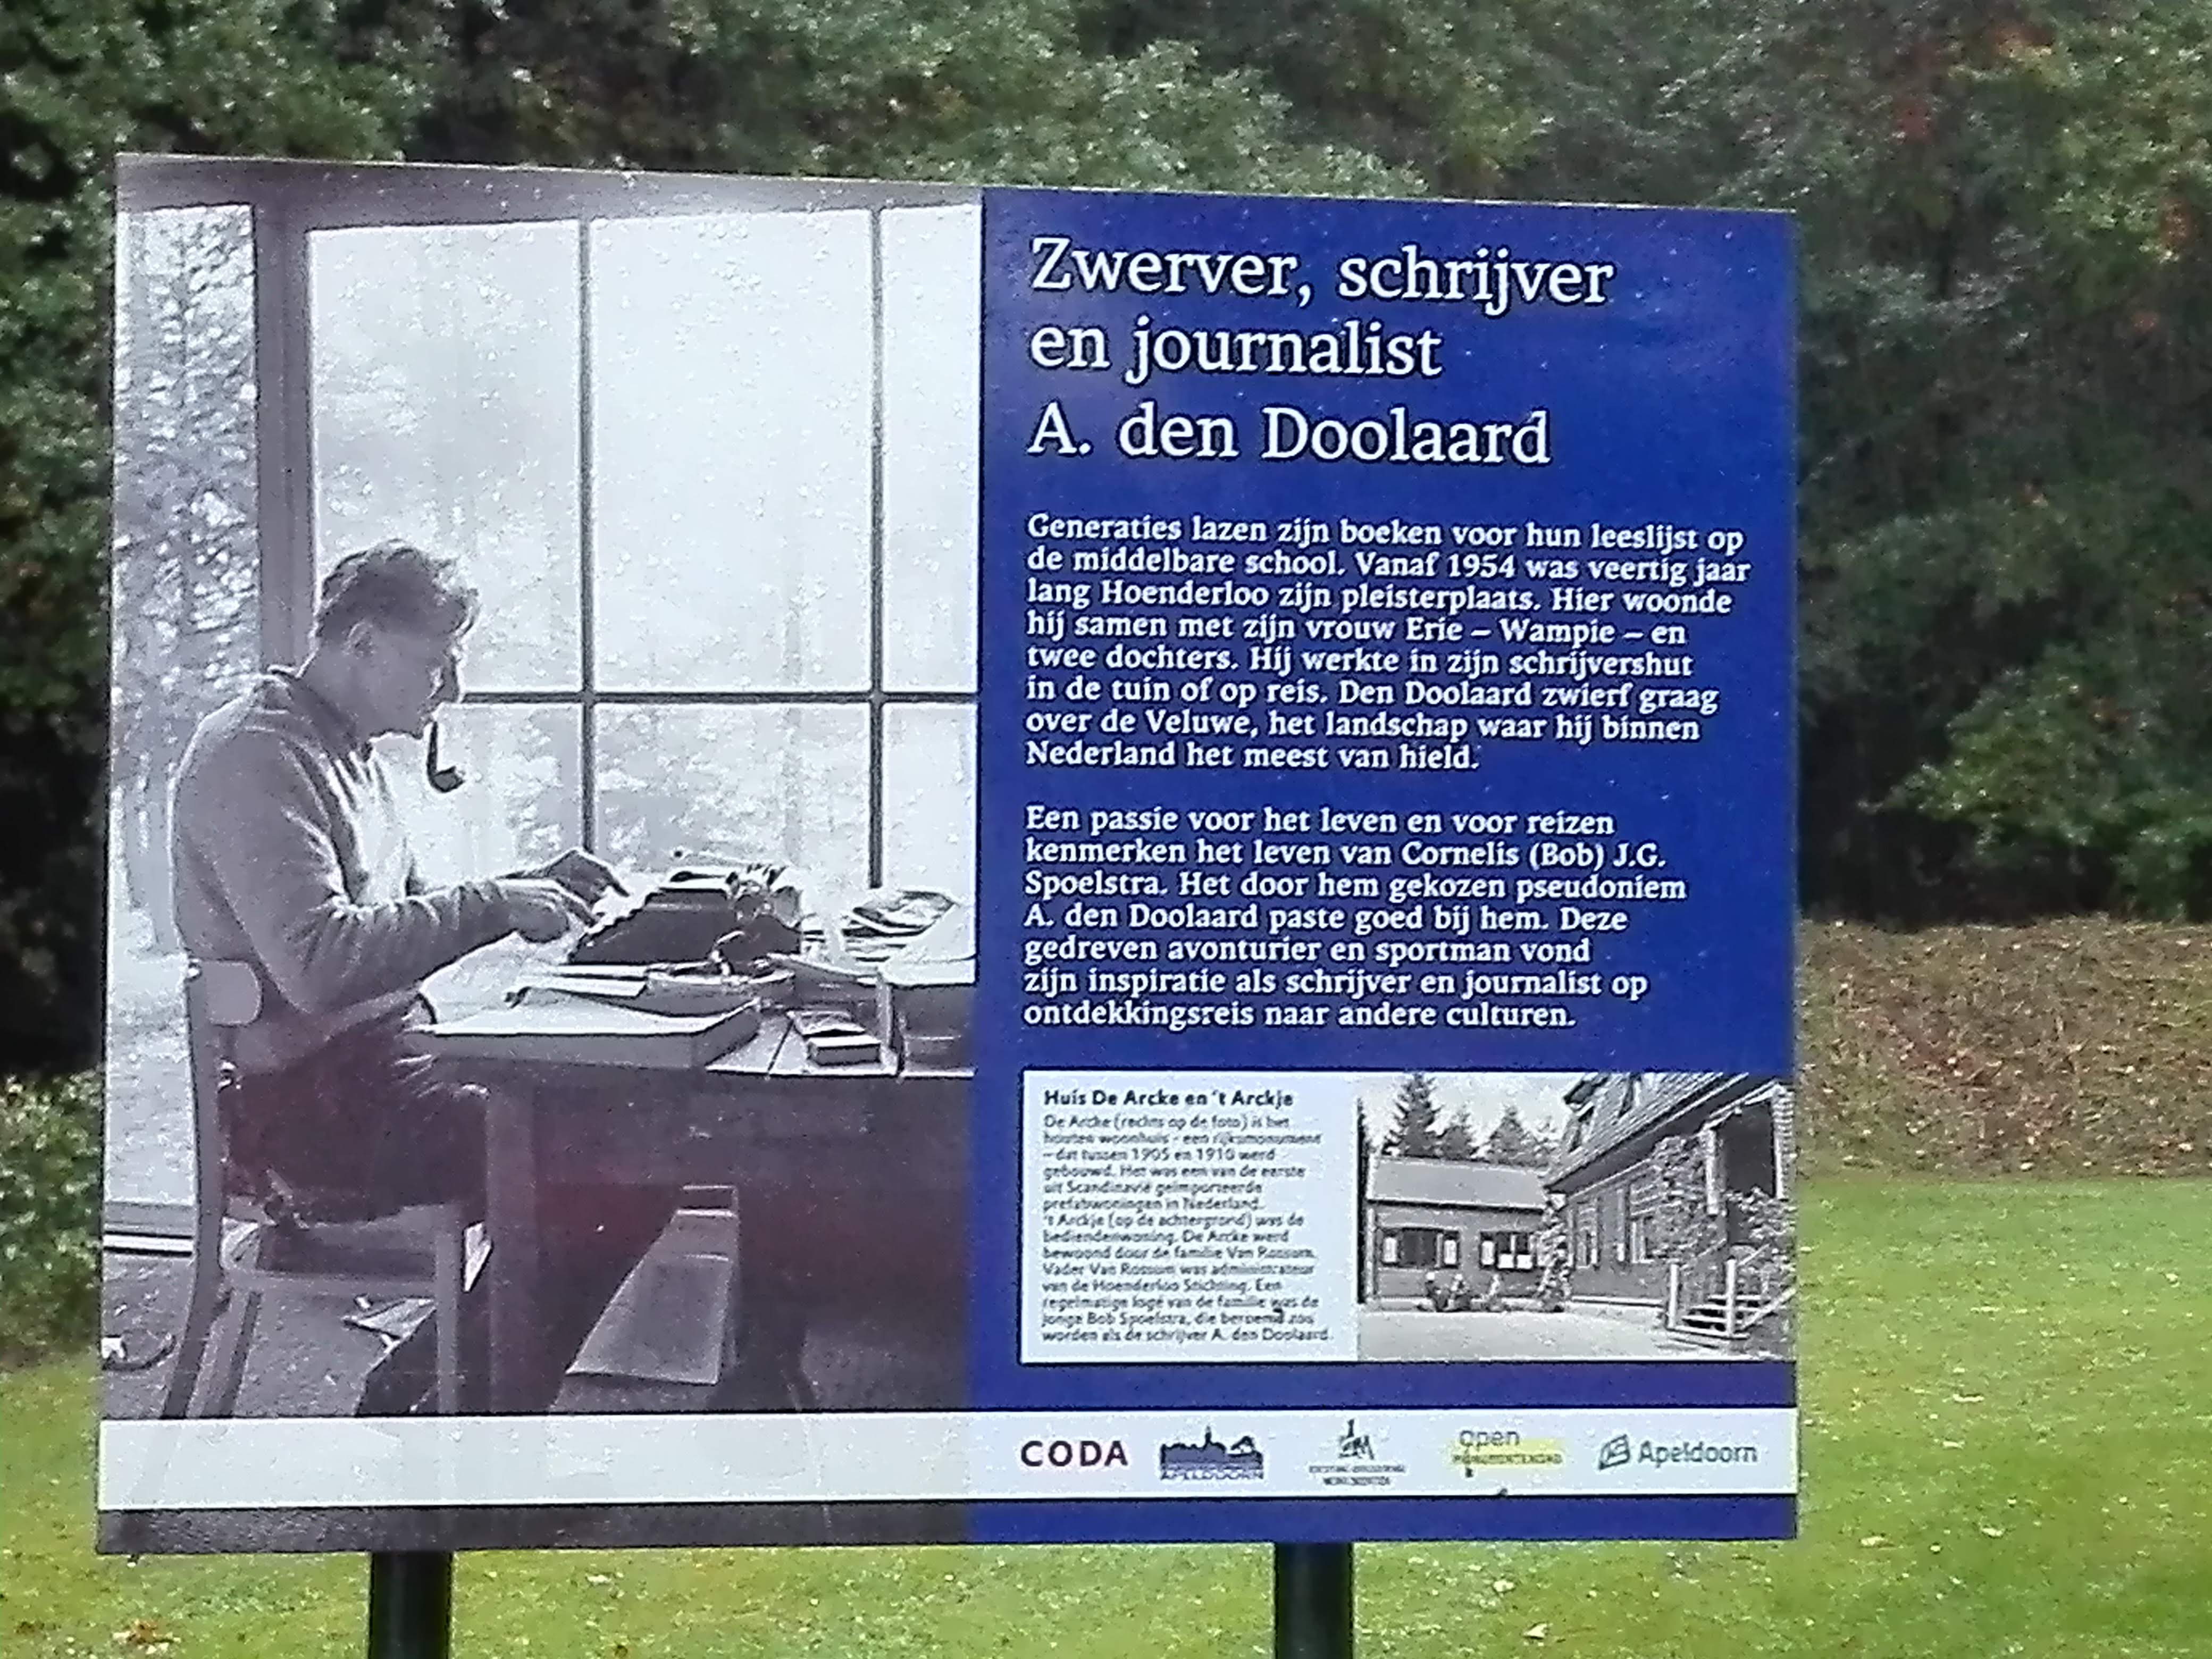 Informatiebord over A. den Doolaard bij museum De Kleine Arcke in Hoenderloo